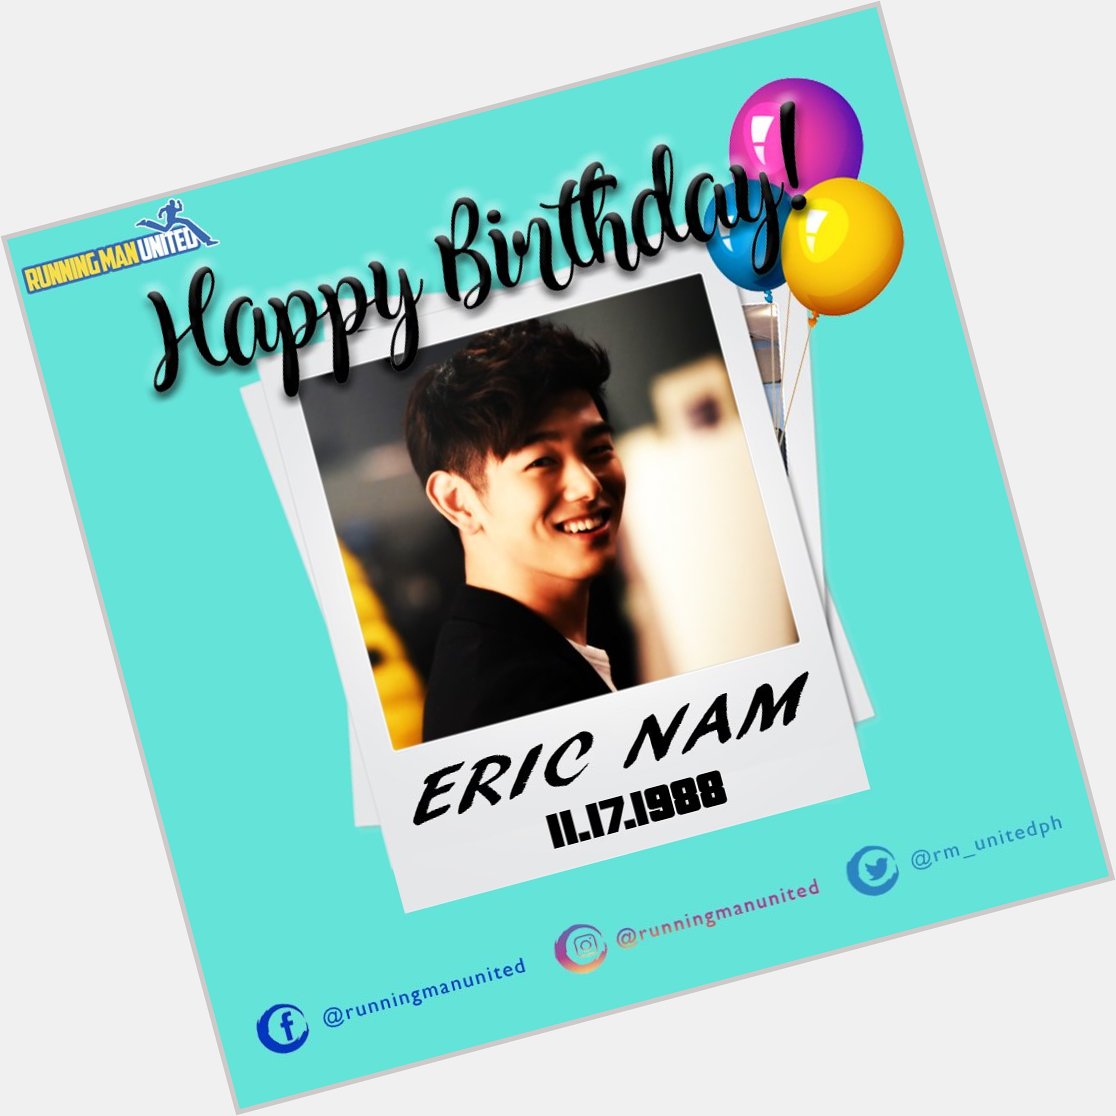 Happy Birthday Eric Nam! 